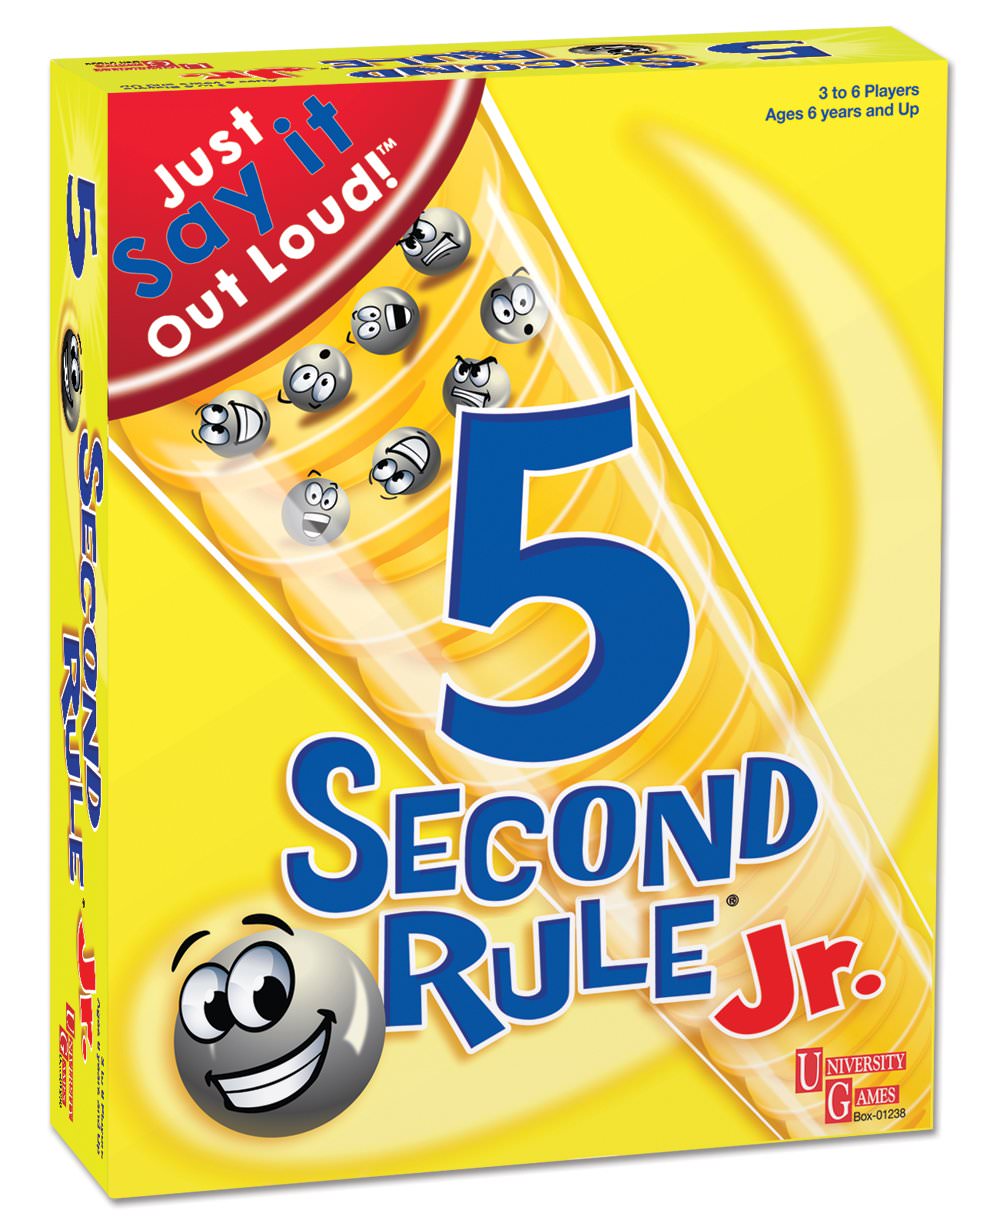 ボードゲーム University Games 5 Second Rule Junior 輸入版 日本語説明書なし